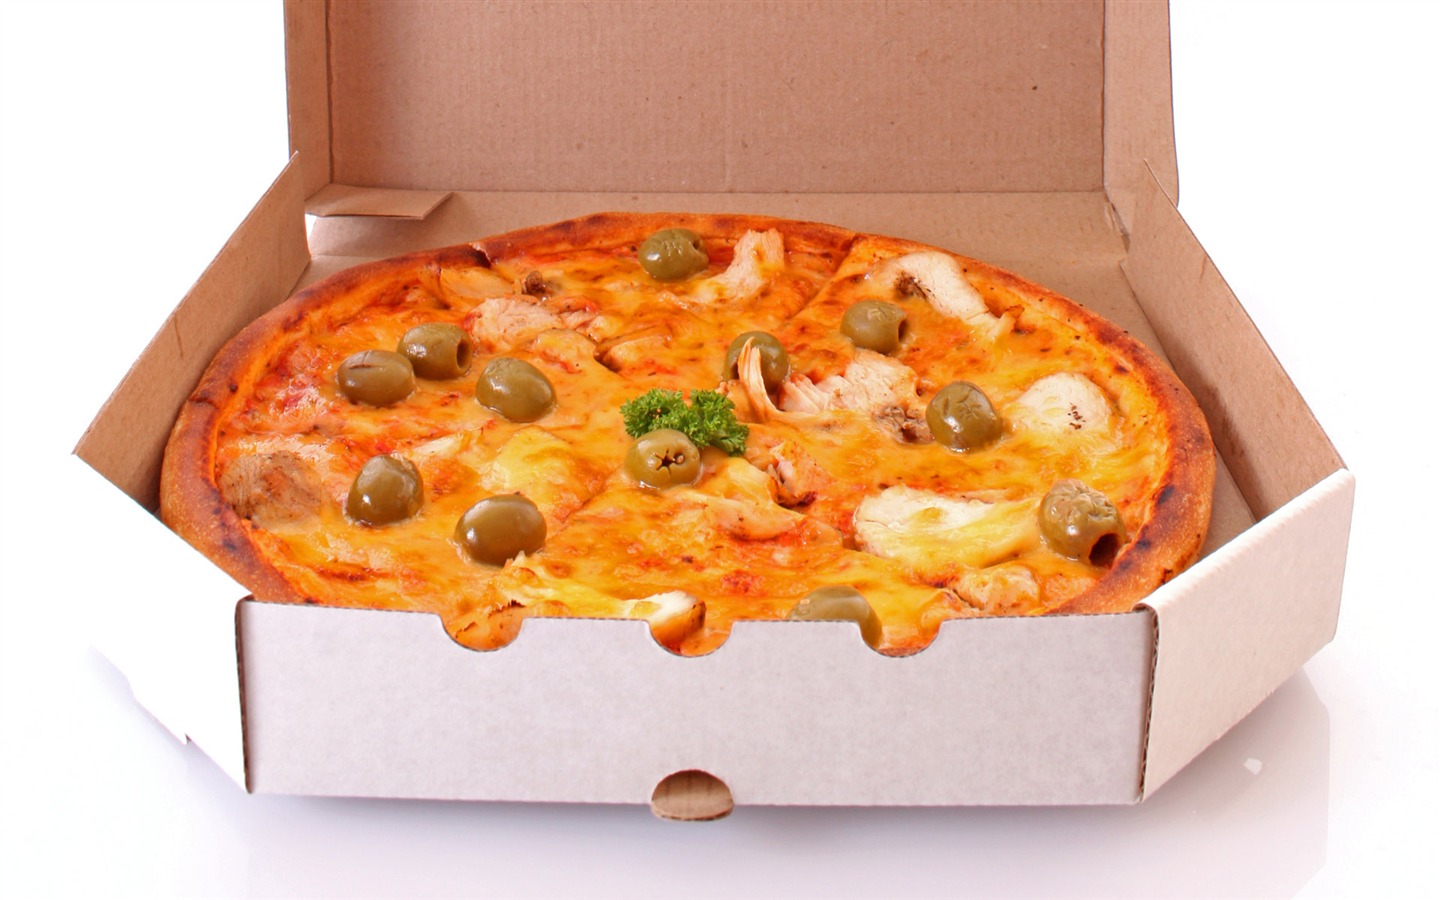 Fondos de pizzerías de Alimentos (3) #13 - 1440x900